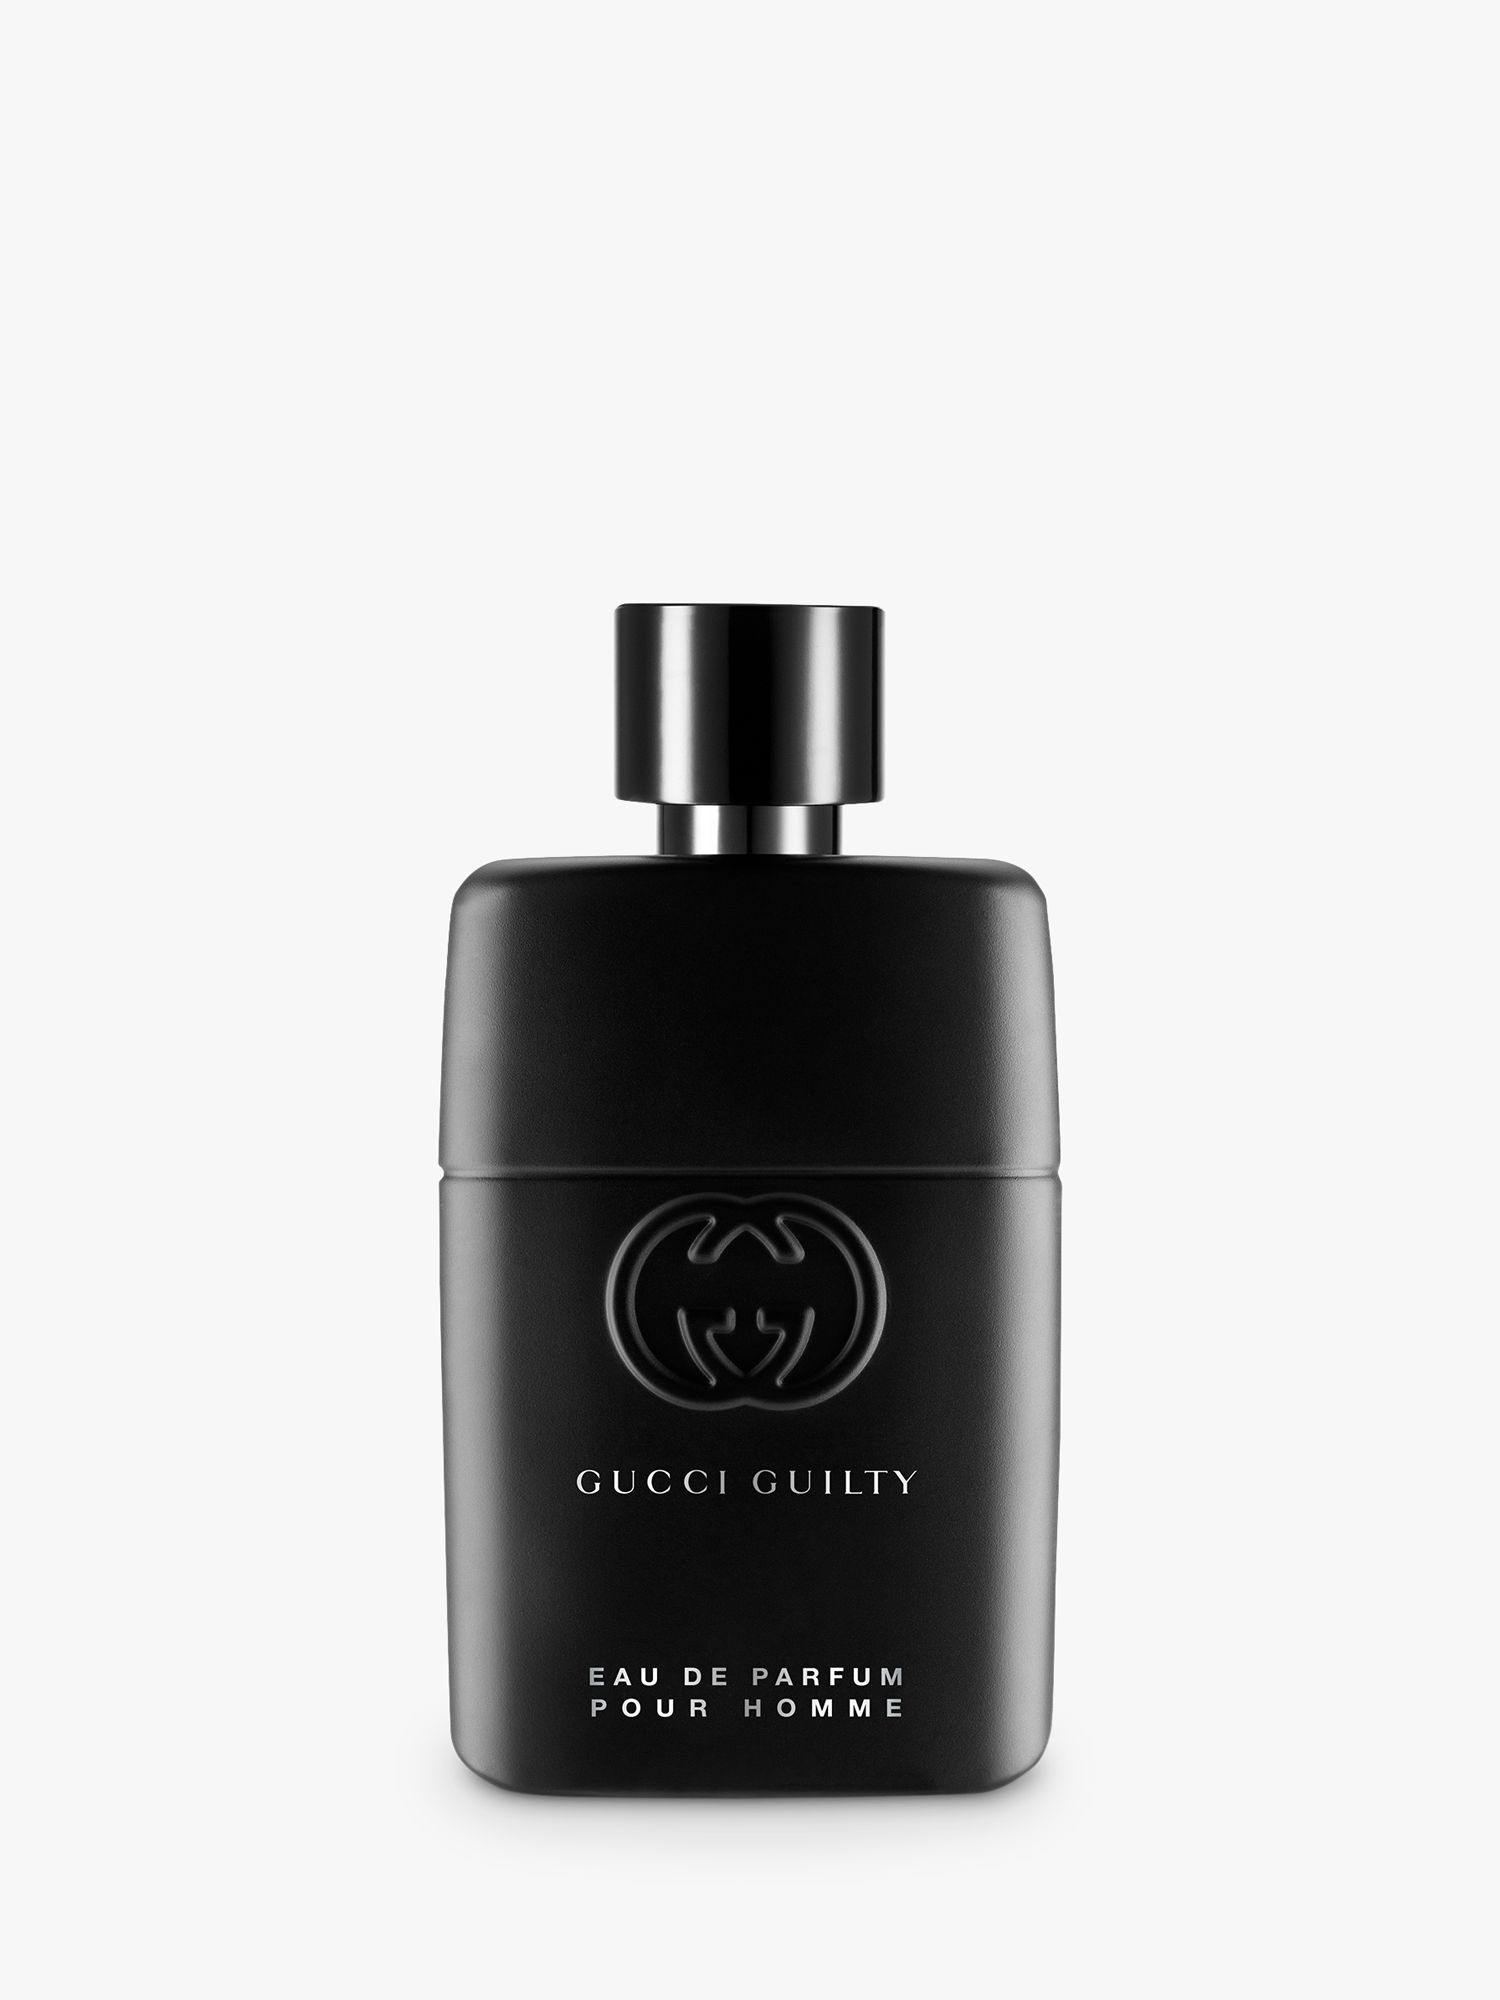 Gucci Guilty Pour Homme Eau de Parfum, 50ml at John Lewis & Partners